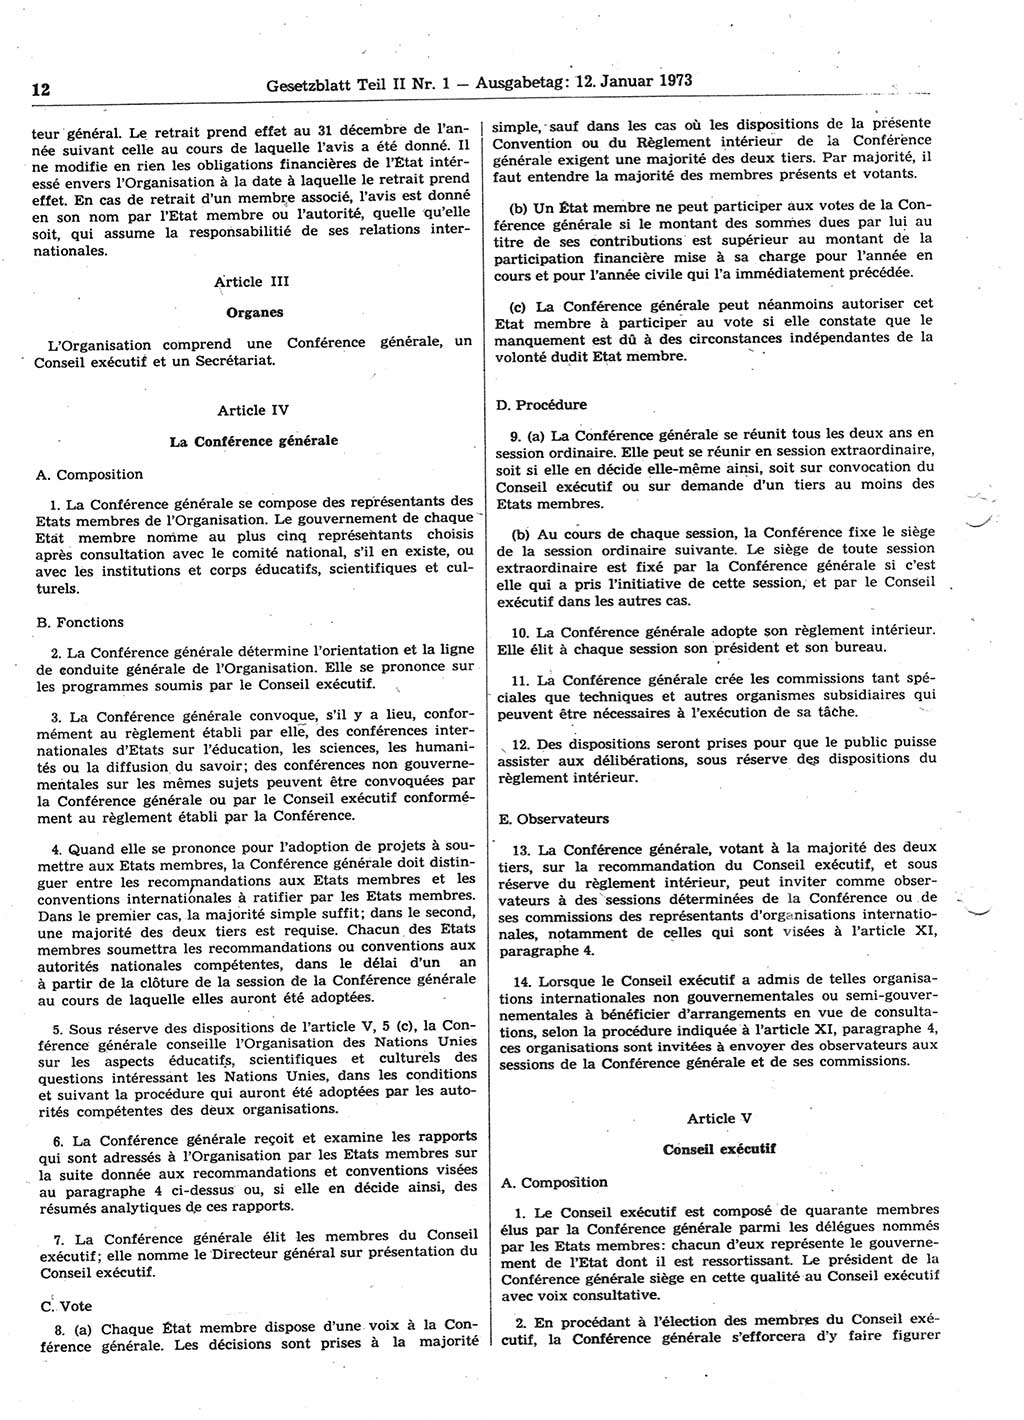 Gesetzblatt (GBl.) der Deutschen Demokratischen Republik (DDR) Teil ⅠⅠ 1973, Seite 12 (GBl. DDR ⅠⅠ 1973, S. 12)